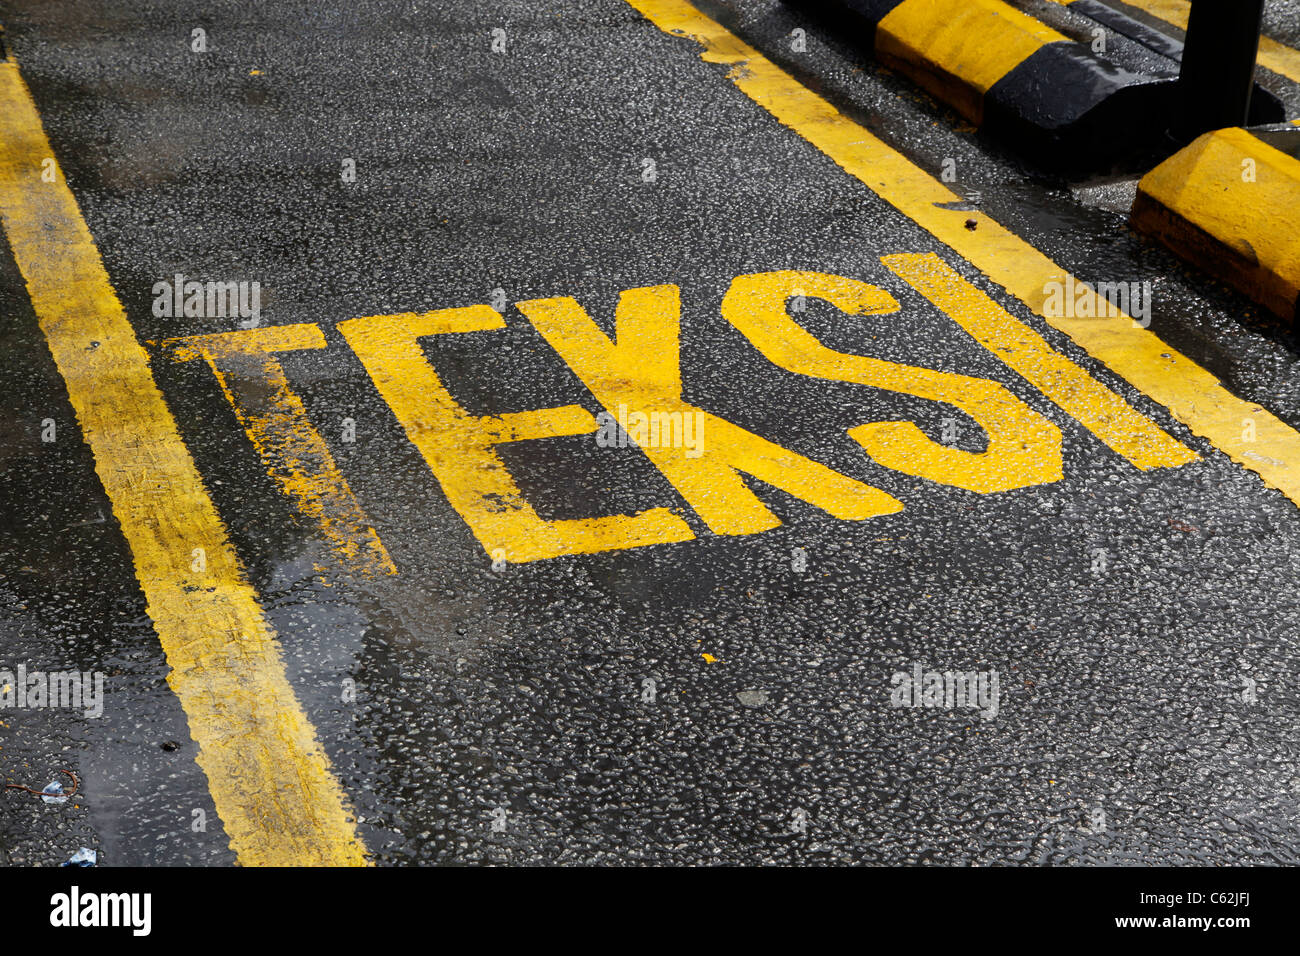 Teksi written on the road of a taxi cab rank in Kuala Lumpur, Malaysia Stock Photo